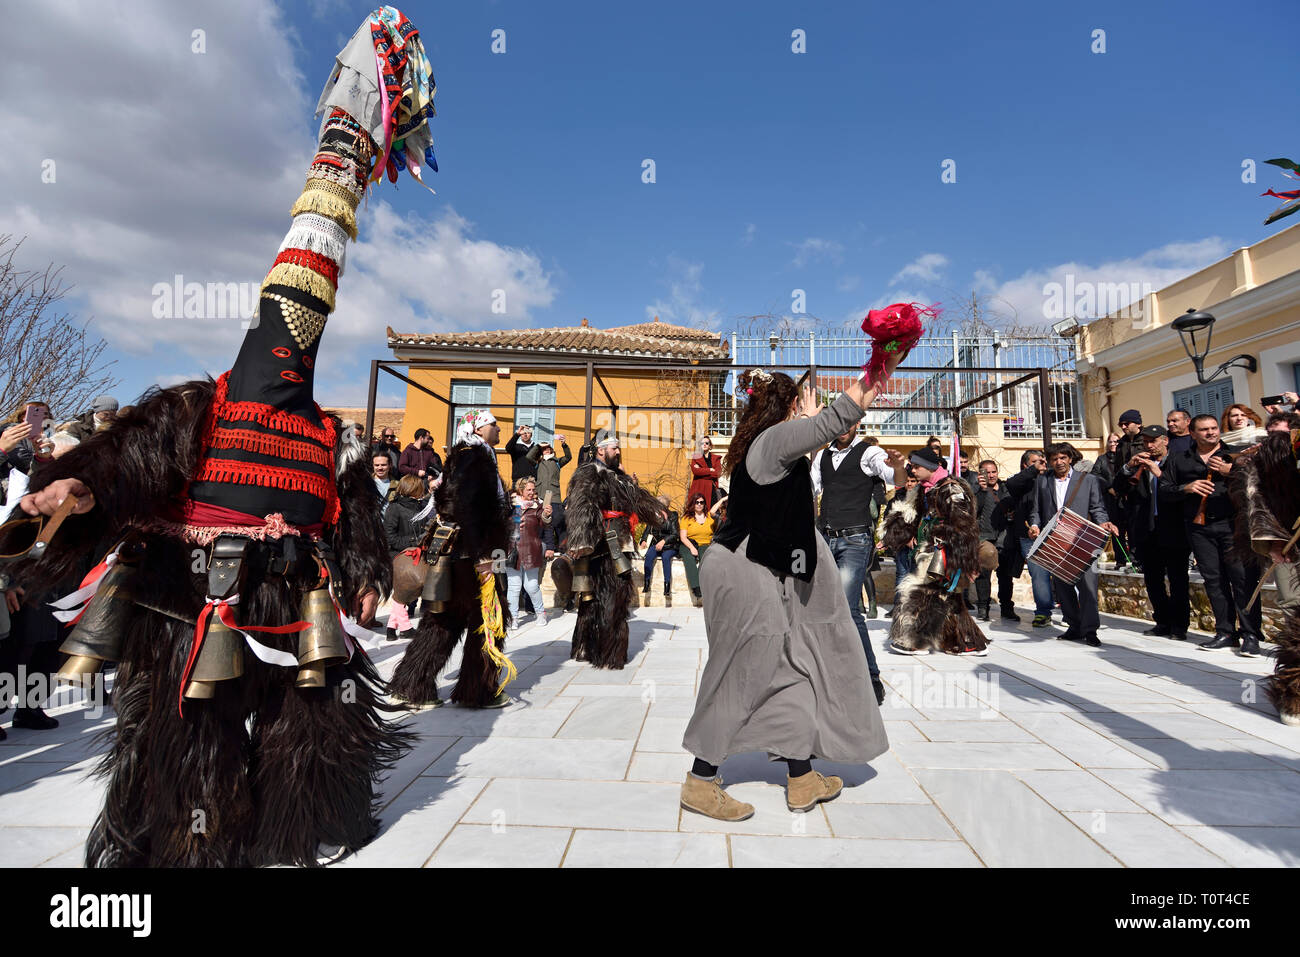 Gli uomini dalla Grecia settentrionale indossando costumi tradizionali con campane, danza durante la festa di carnevale a Atene, Grecia Foto Stock